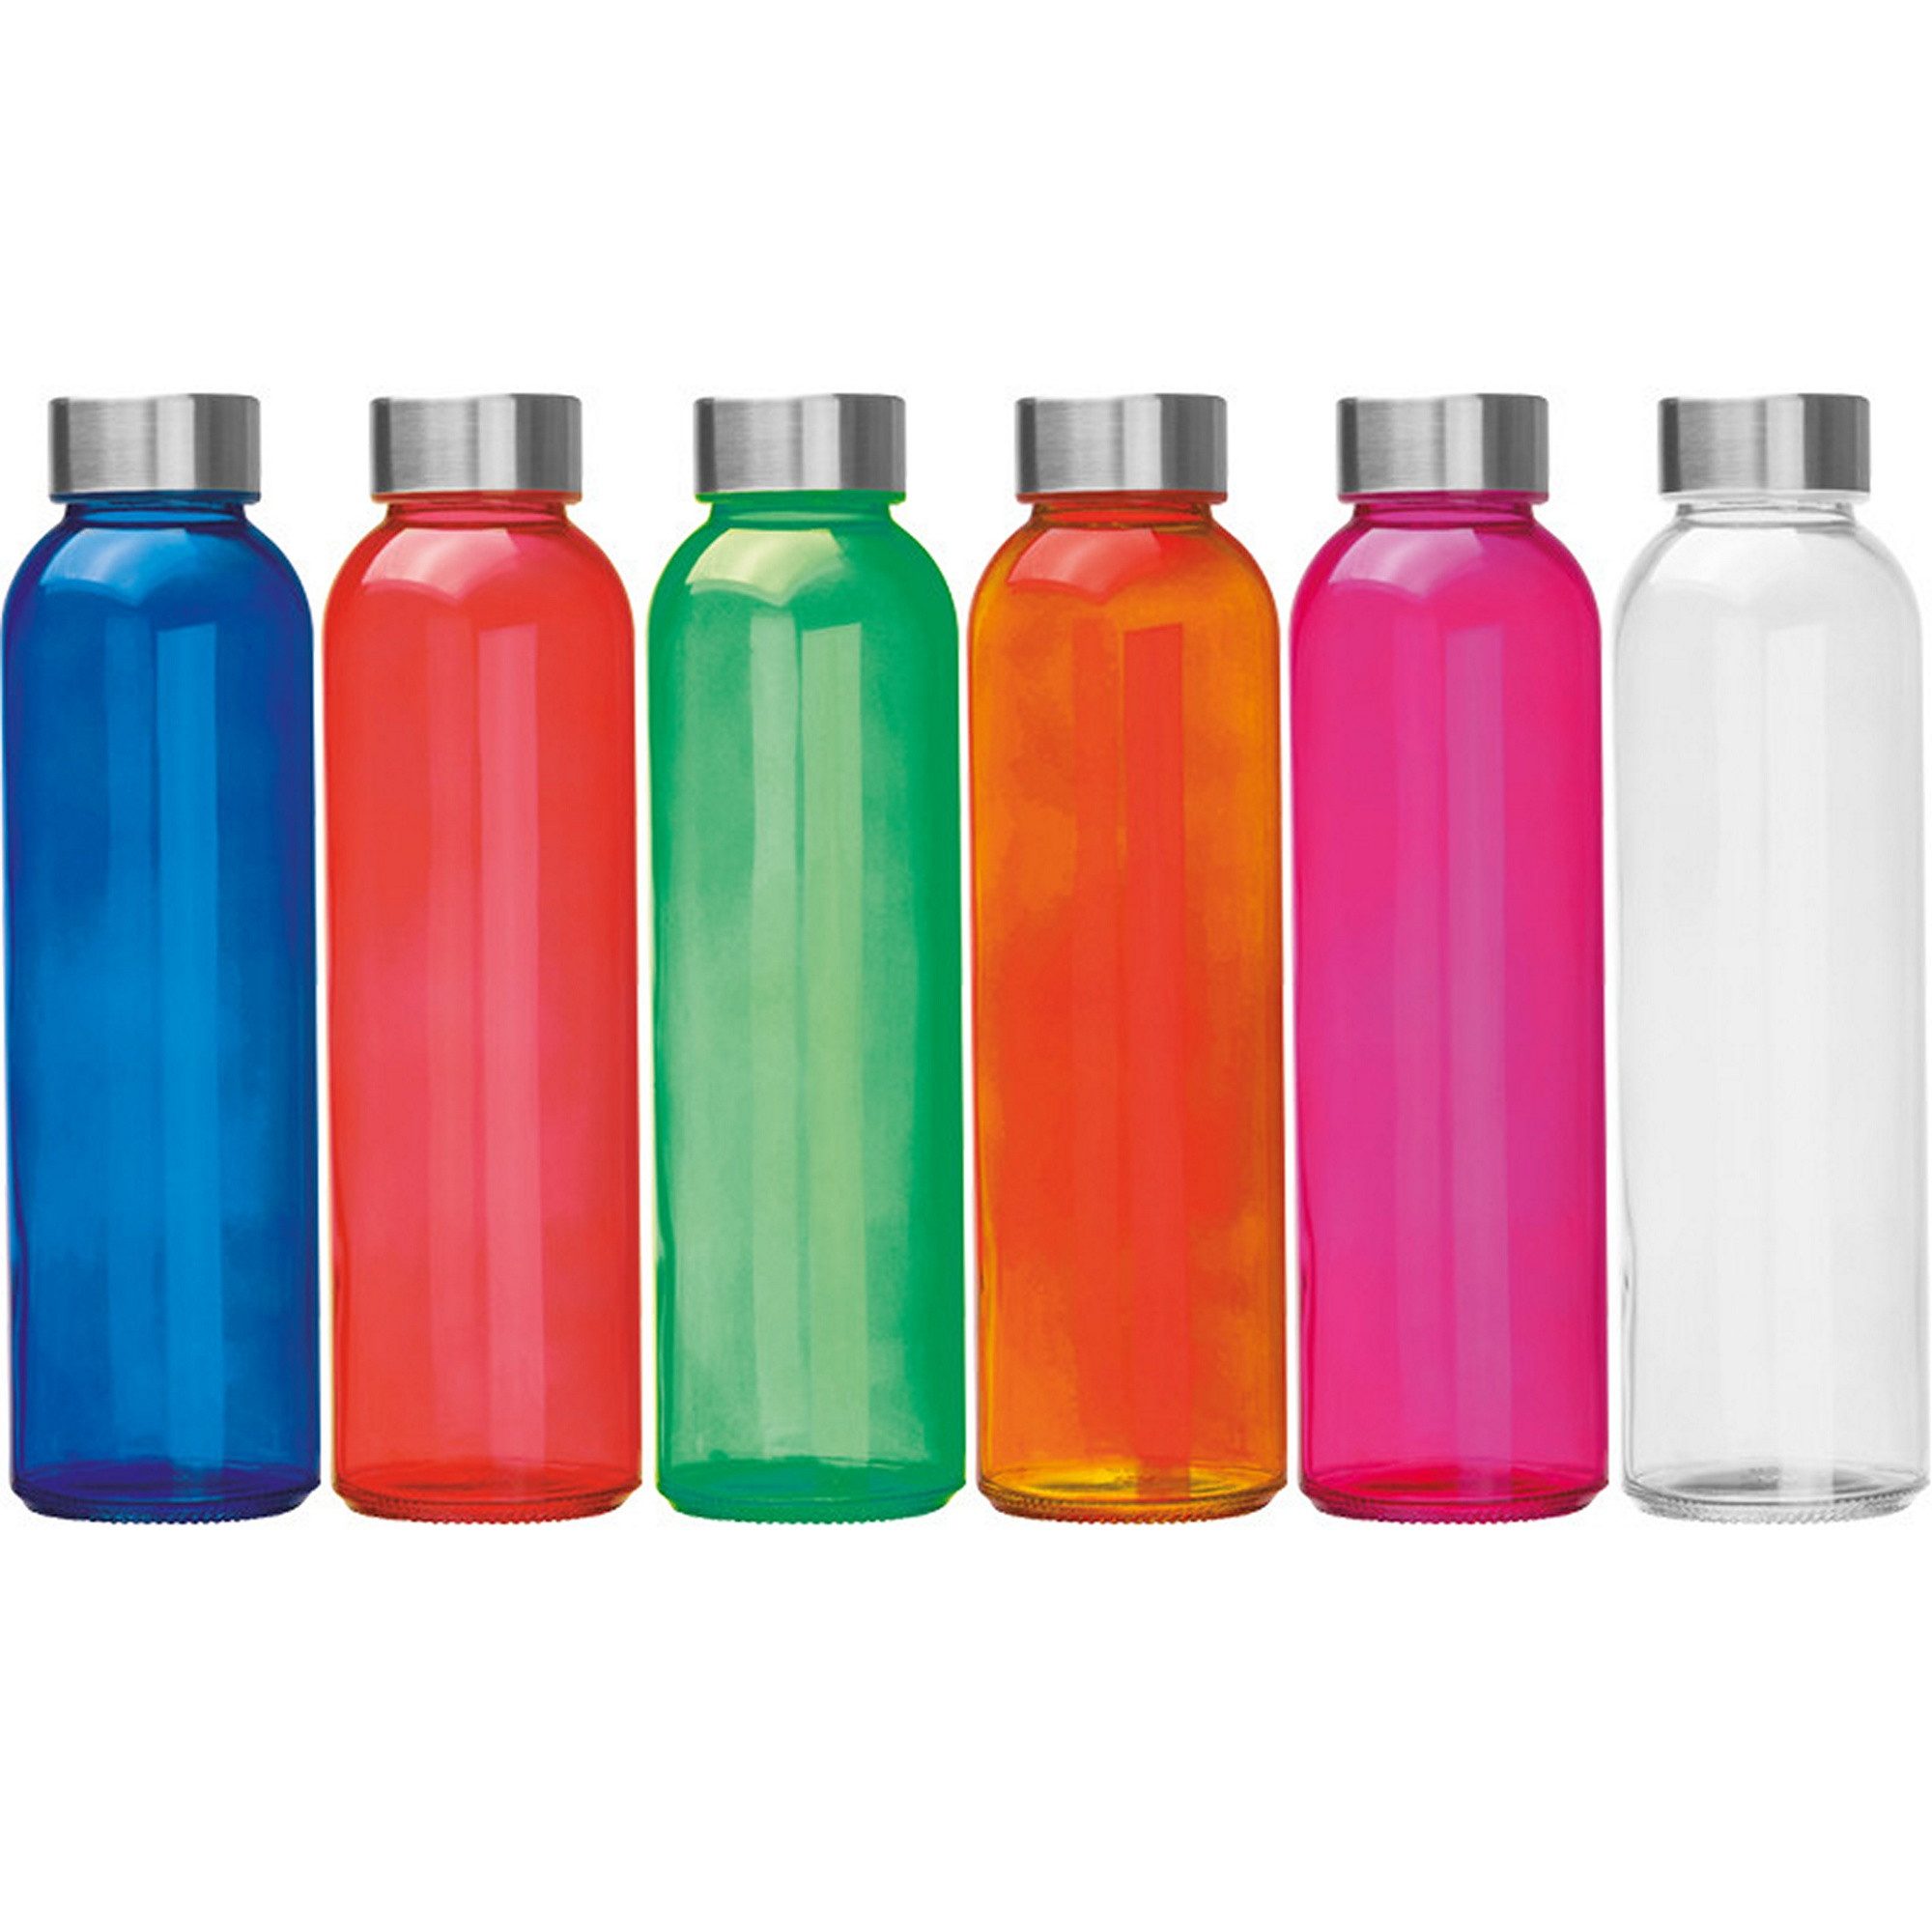 Livepac Office Trinkflasche 6x Trinkflasche / aus Glas / Füllmenge: 500ml / 6 verschieden Farben